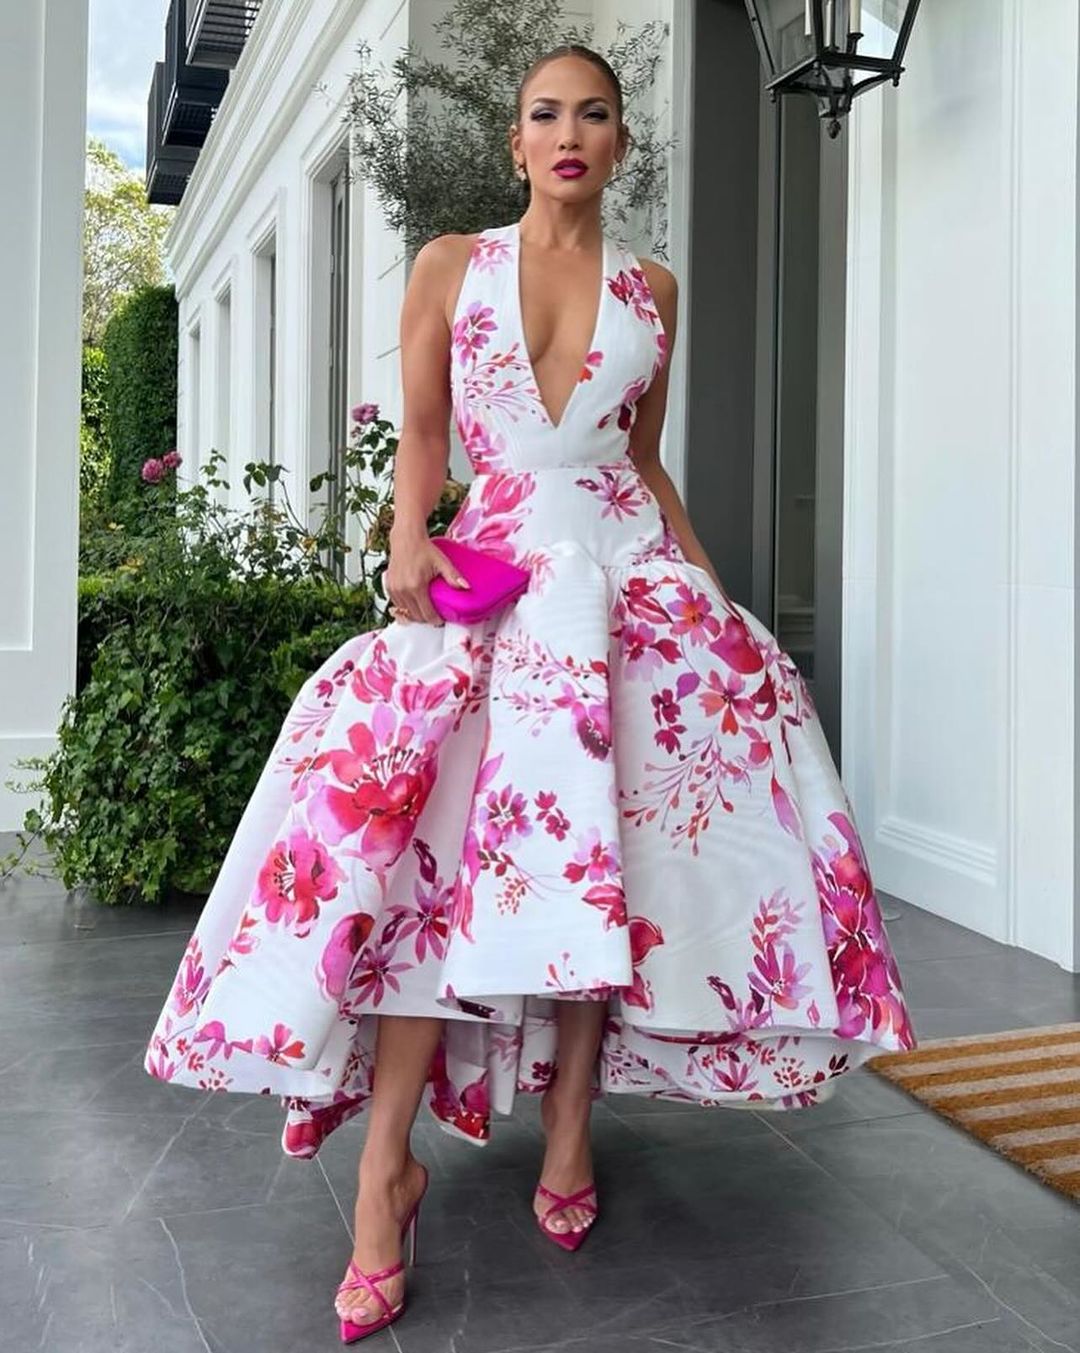 Декольте до талії та колір фуксії: Дженніфер Лопес у трендовій сукні викликала фурор